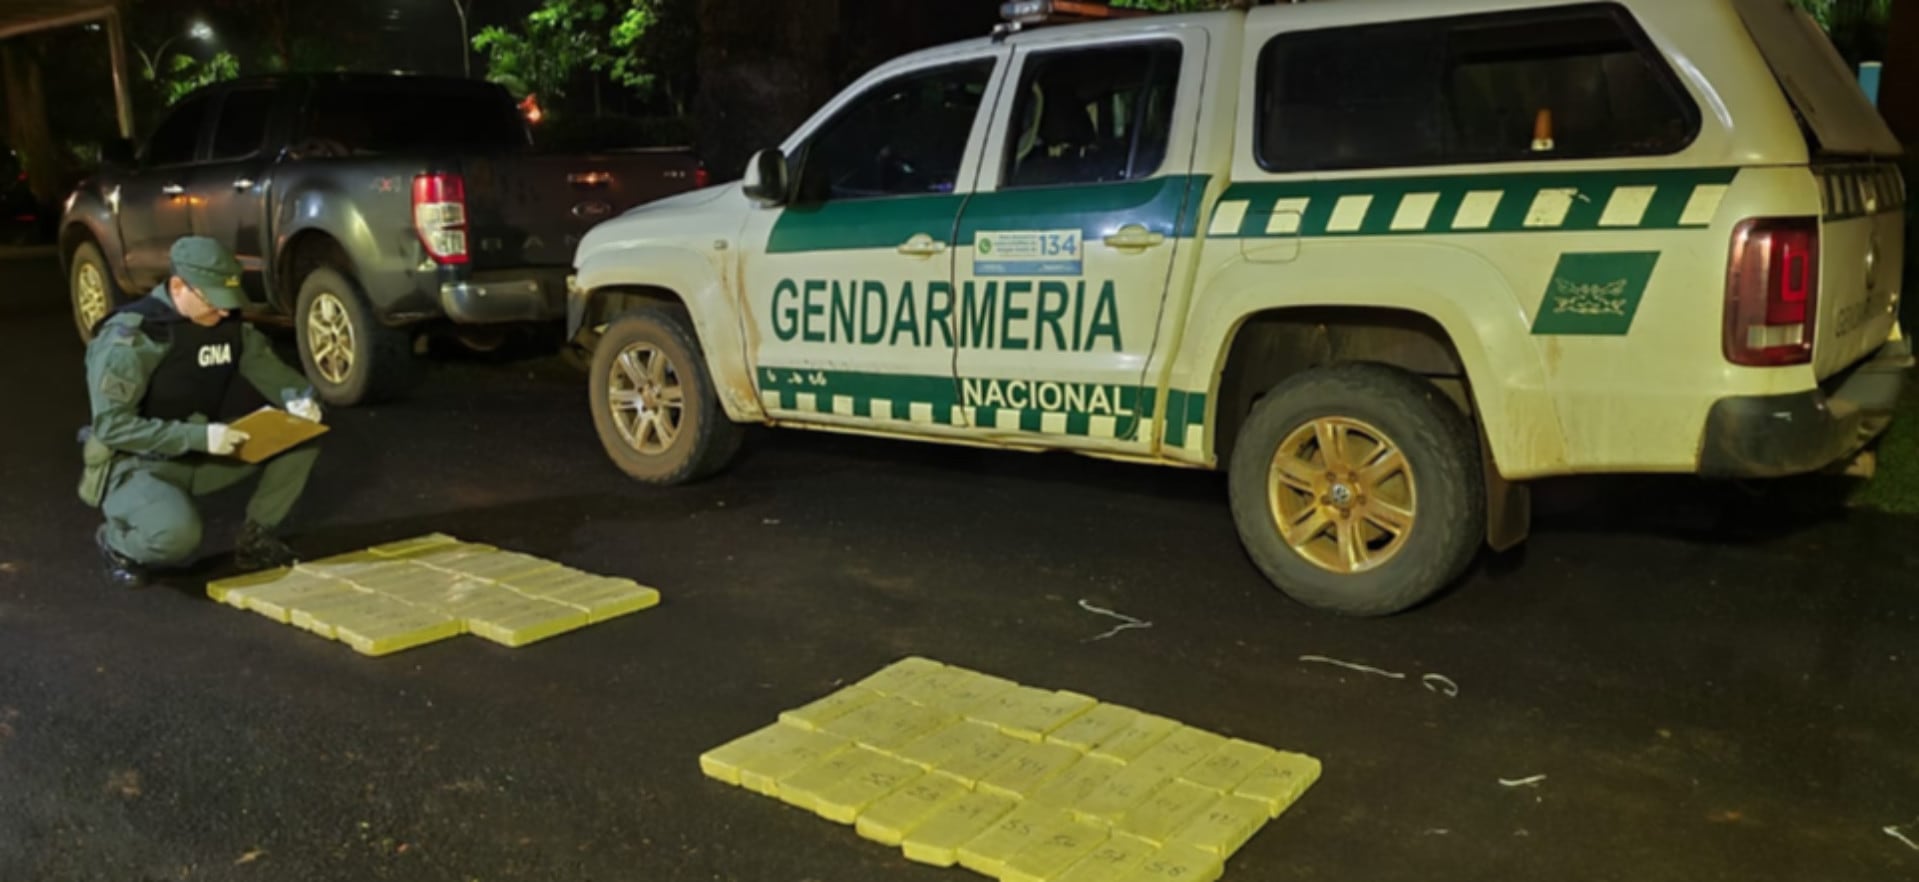 Gendarmería secuestró más de 58 kilos de marihuana abandonados por dos personas en su huida en durante un control en Misiones (GNA)